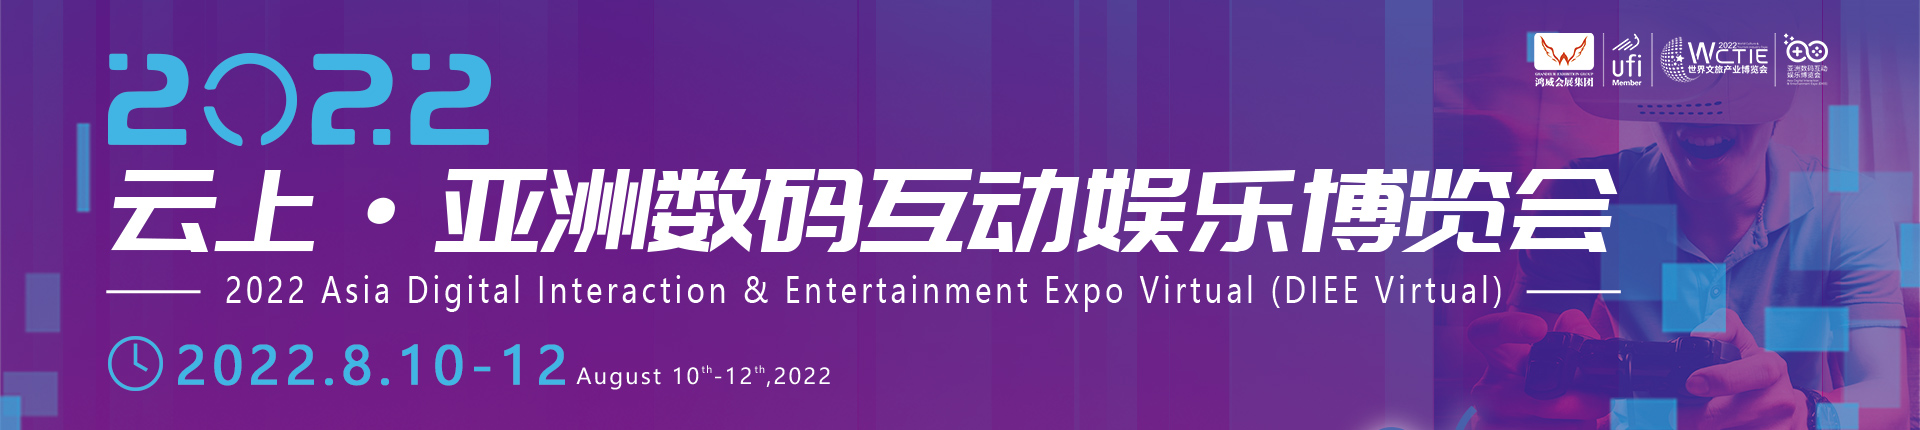 2022云上·亚洲数码互动娱乐博览会